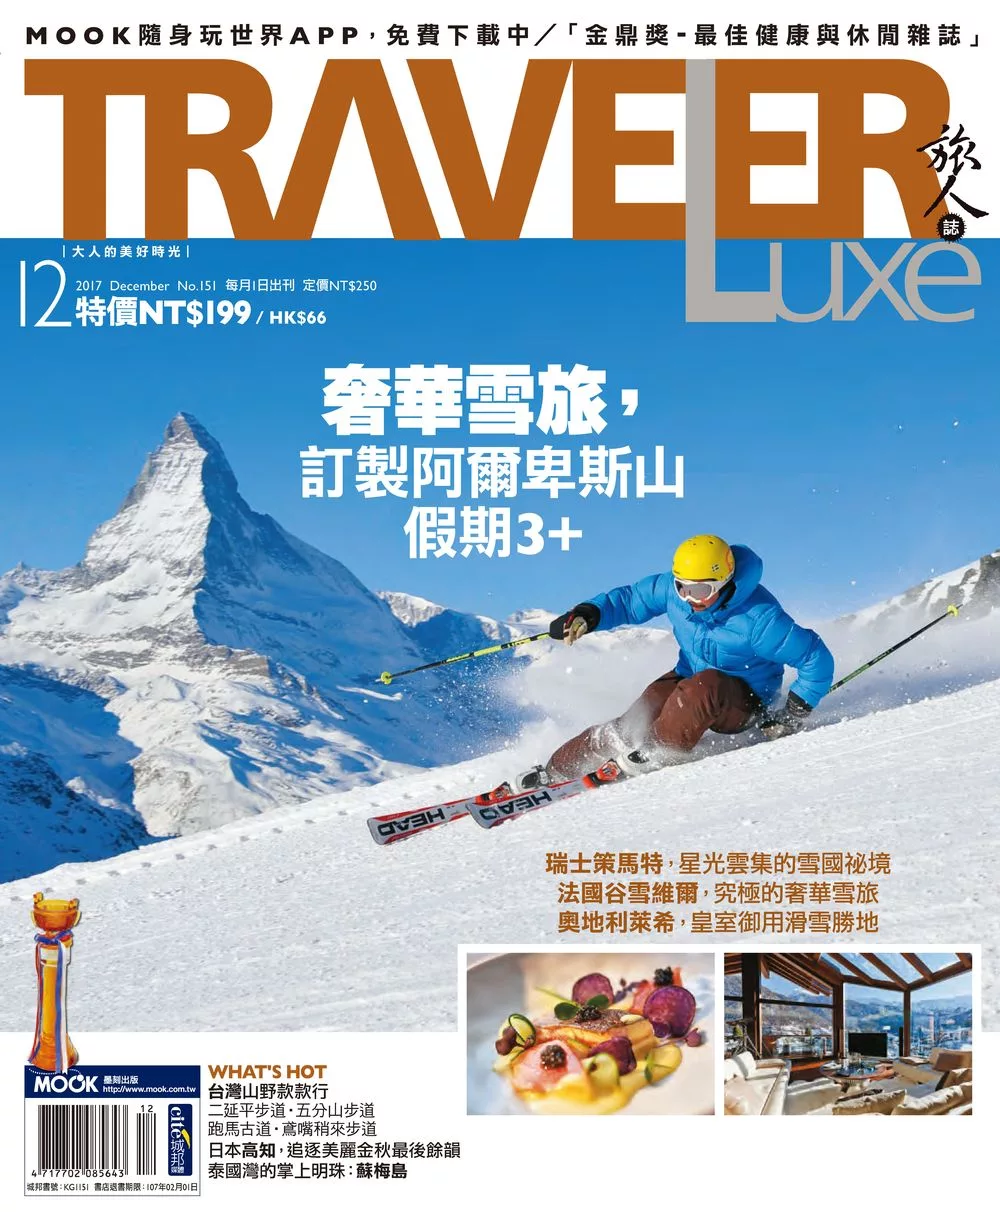 TRAVELER LUXE 旅人誌 12月號/2017第151期 (電子雜誌)